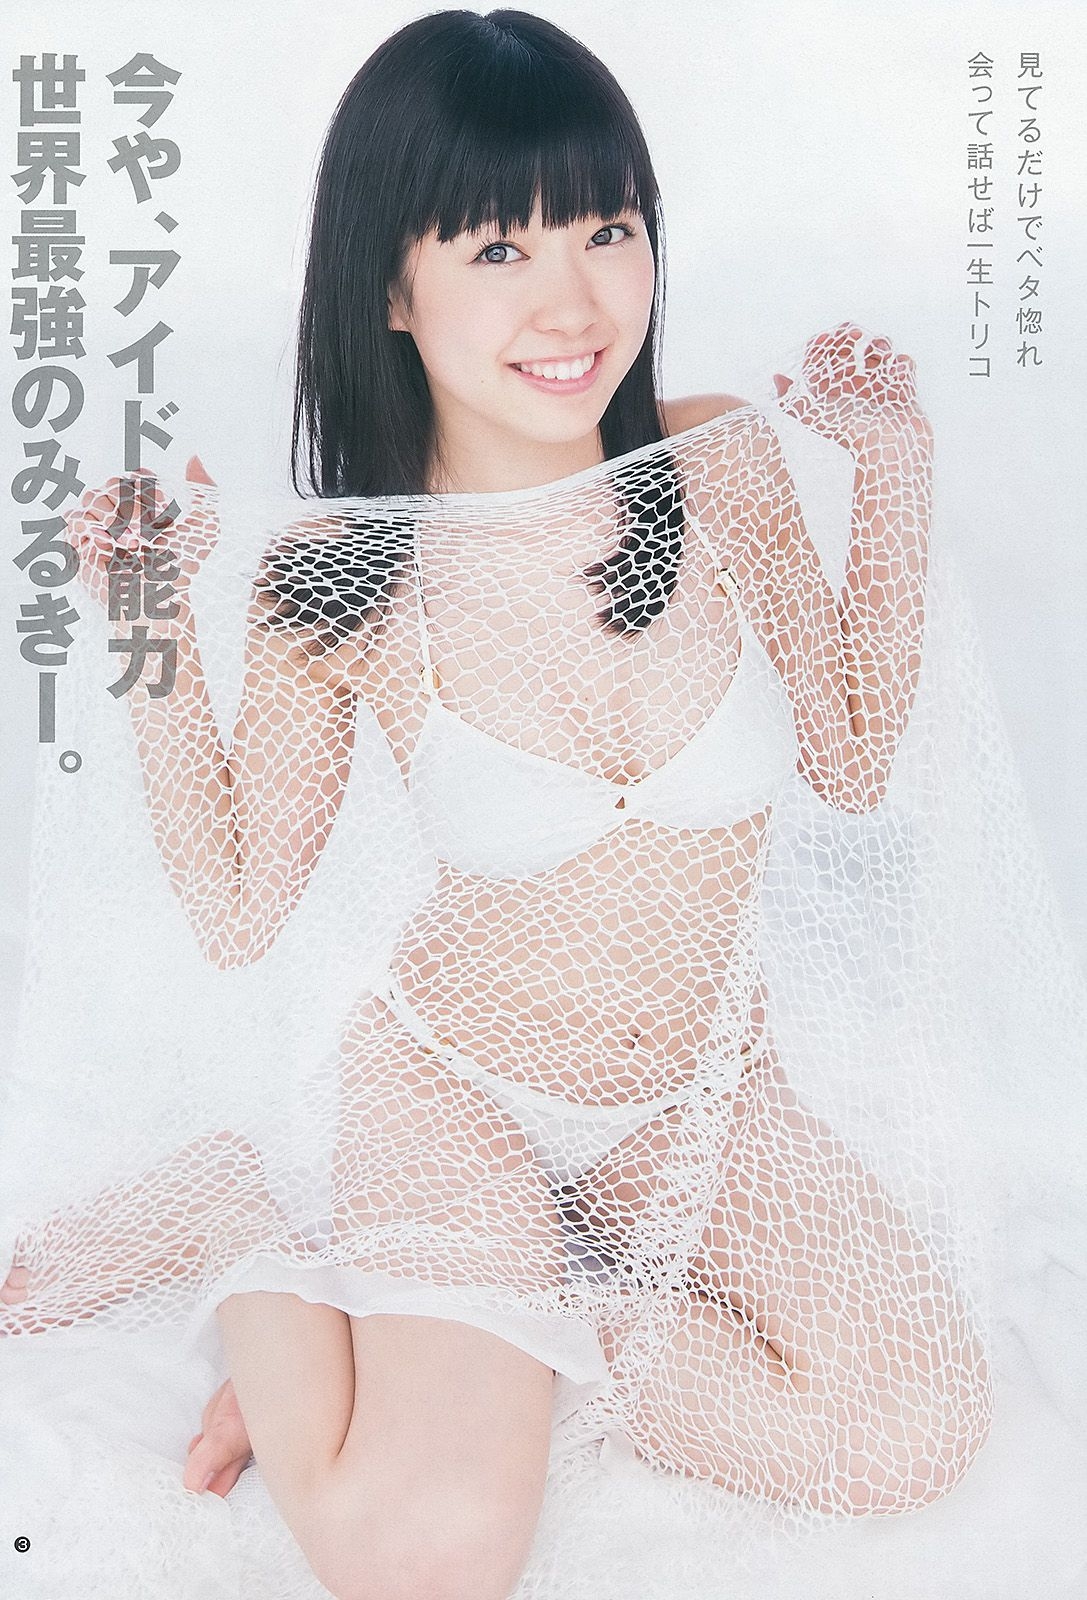 渡辺美優紀 横山めぐみ 上西恵 [Weekly Young Jump] 2013年No.27 写真杂志 